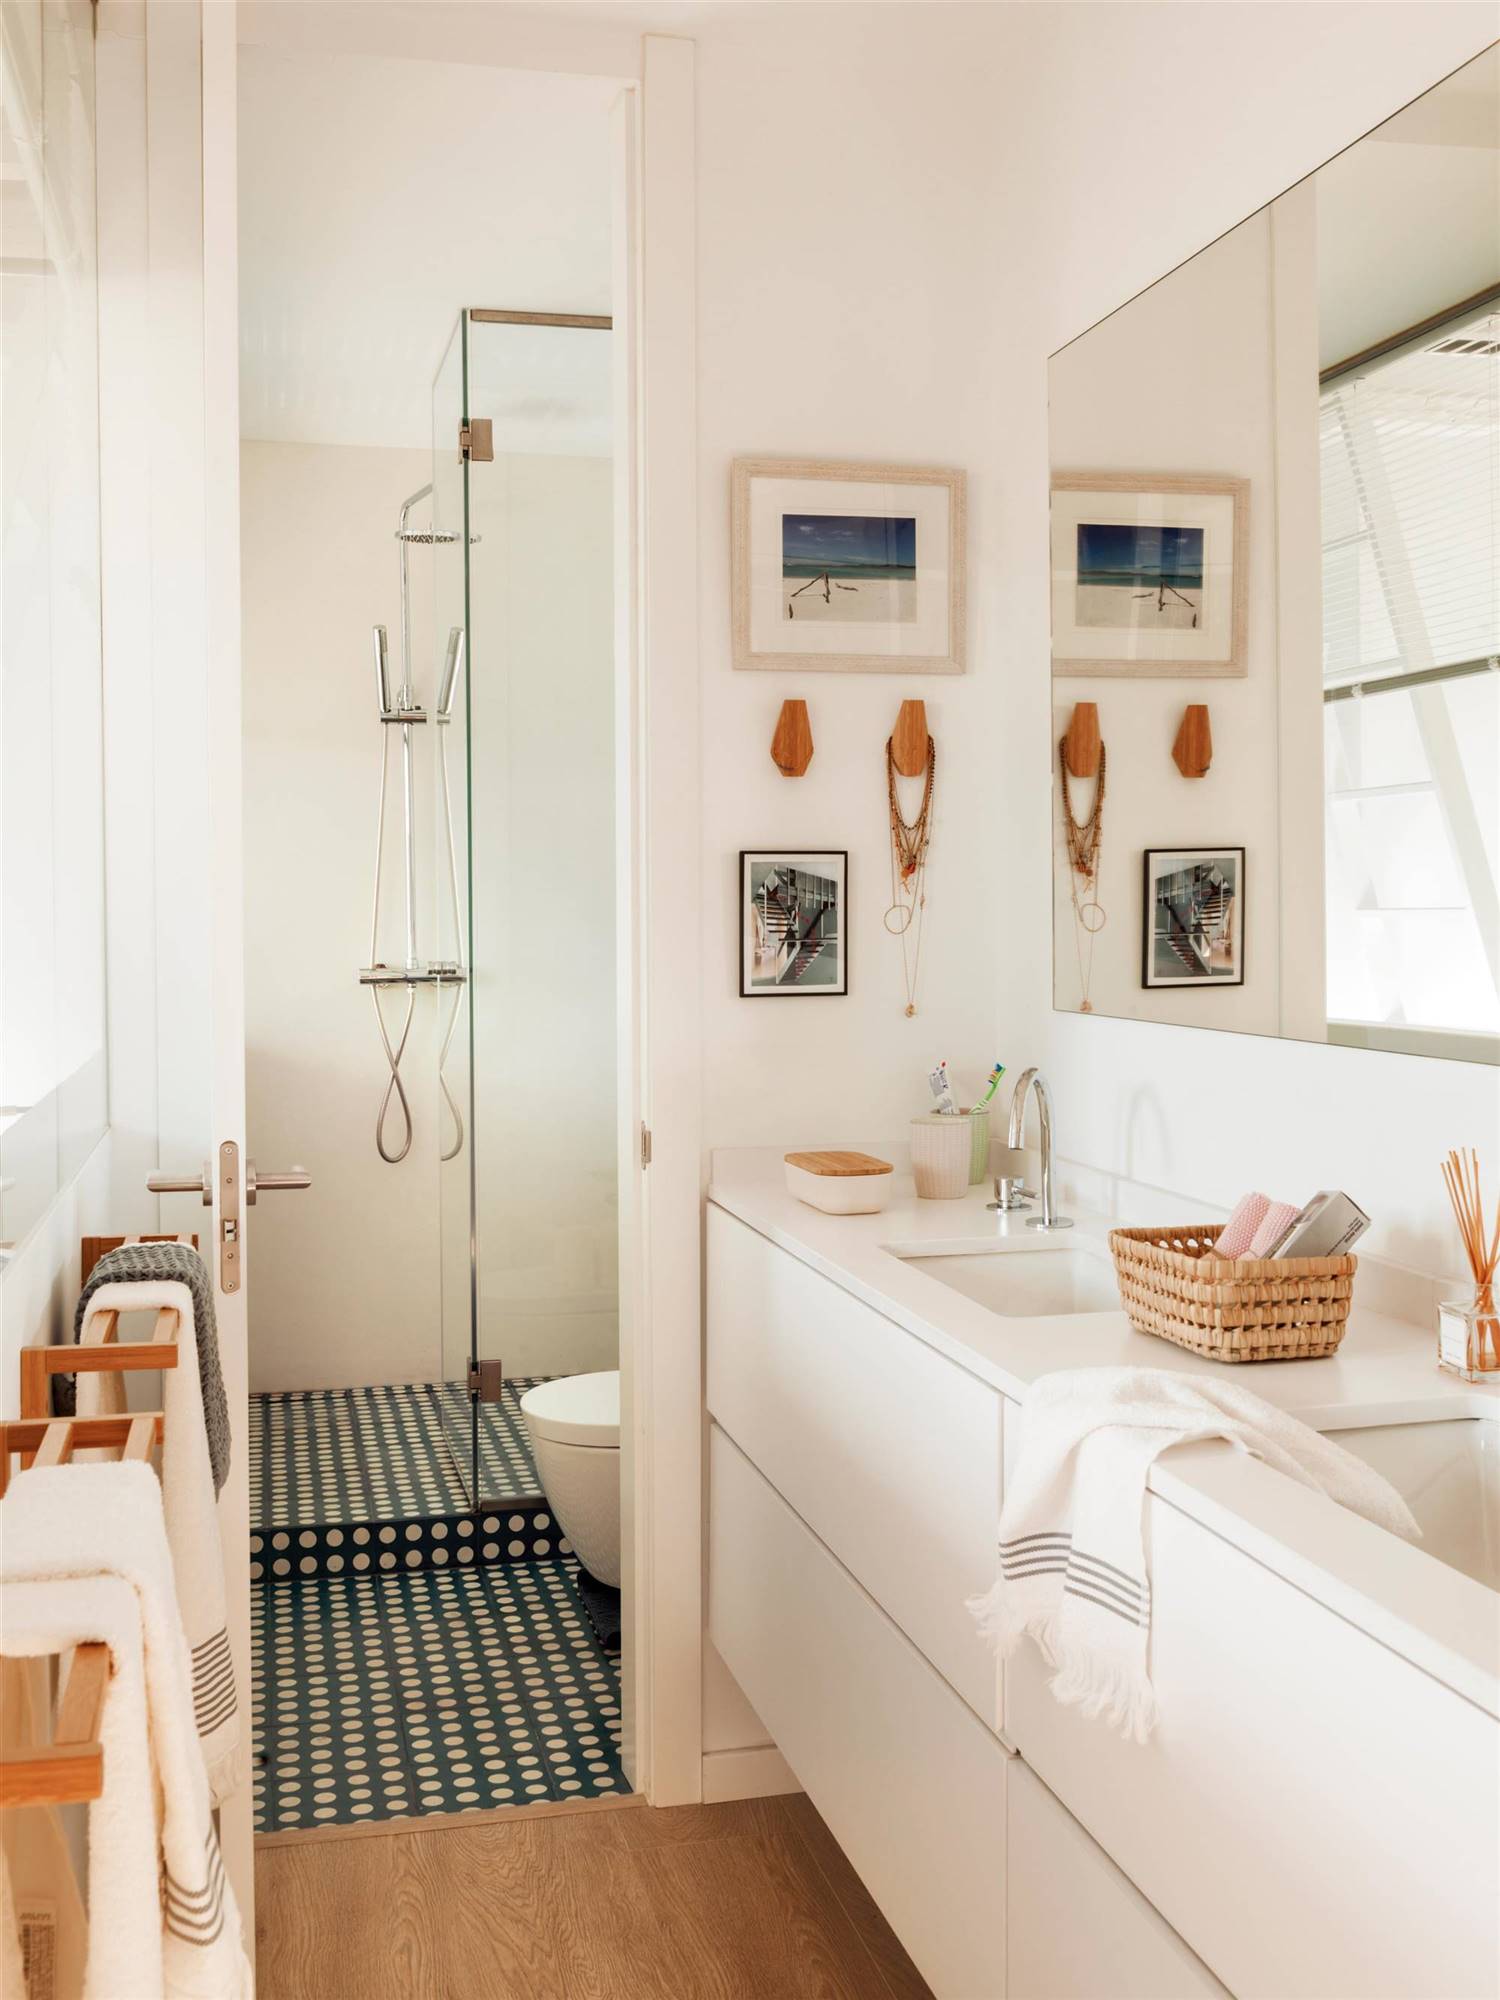 Baño con mueble blanco bajolavabo, ducha y azulejos en la zona del sanitairo.